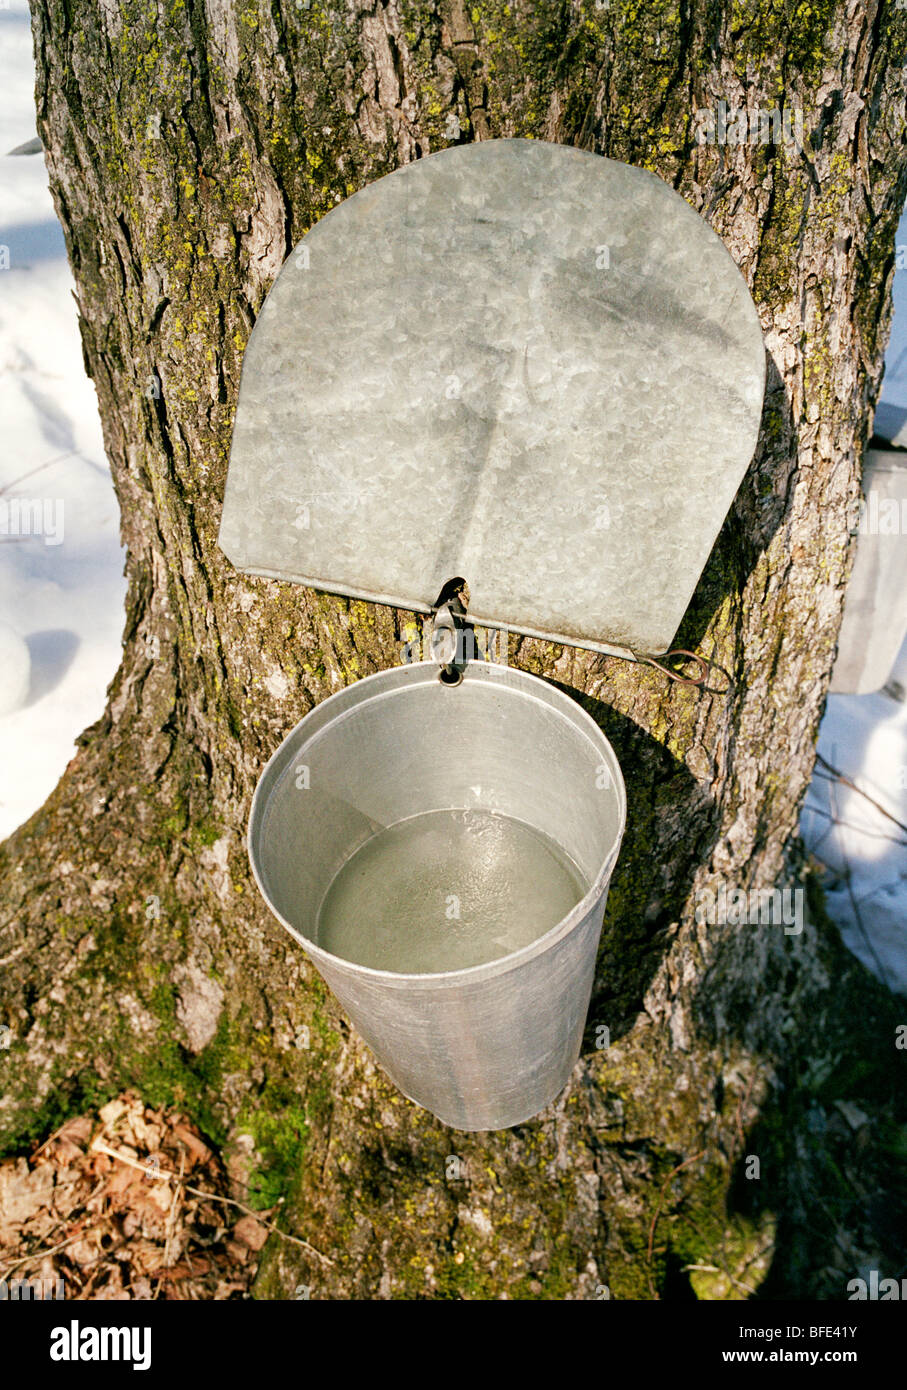 Récipient réceptif pour l'érable sucre attaché à un arbre à une cabane à sucre, Brome-Missisquoi, Québec, Canada Banque D'Images